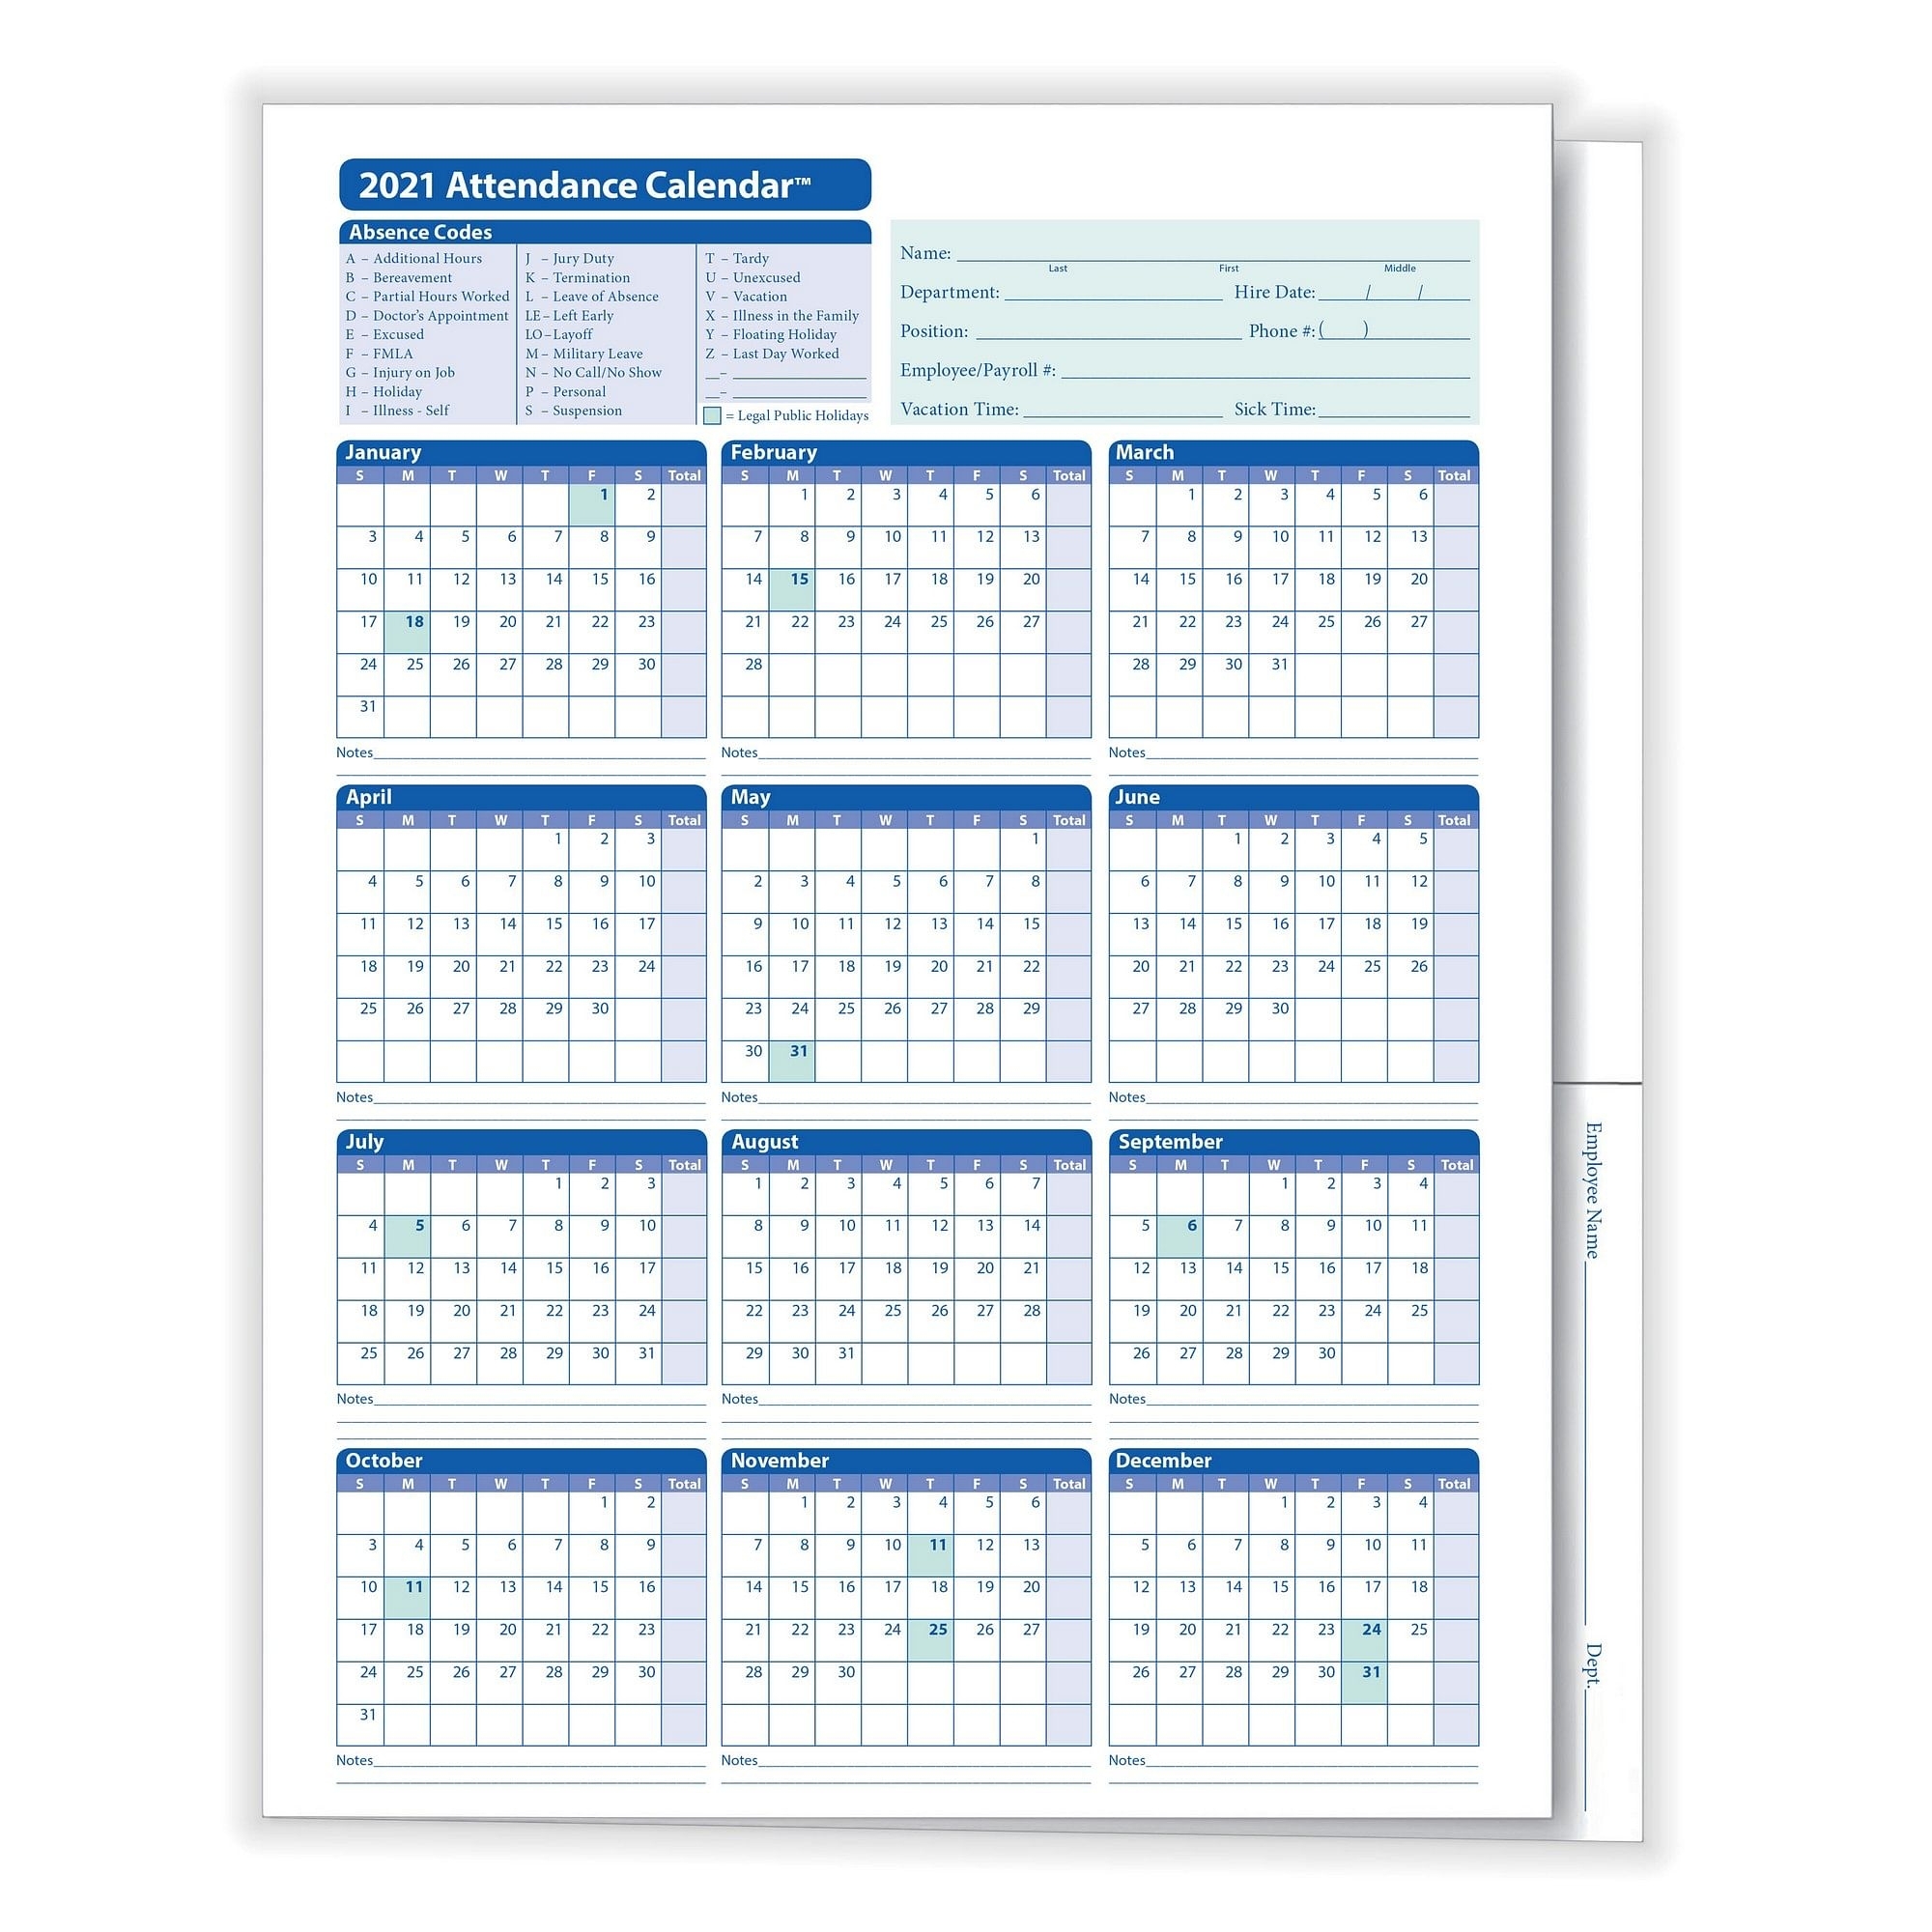 Collect Attendance Calendar 2021 - Best Calendar Example